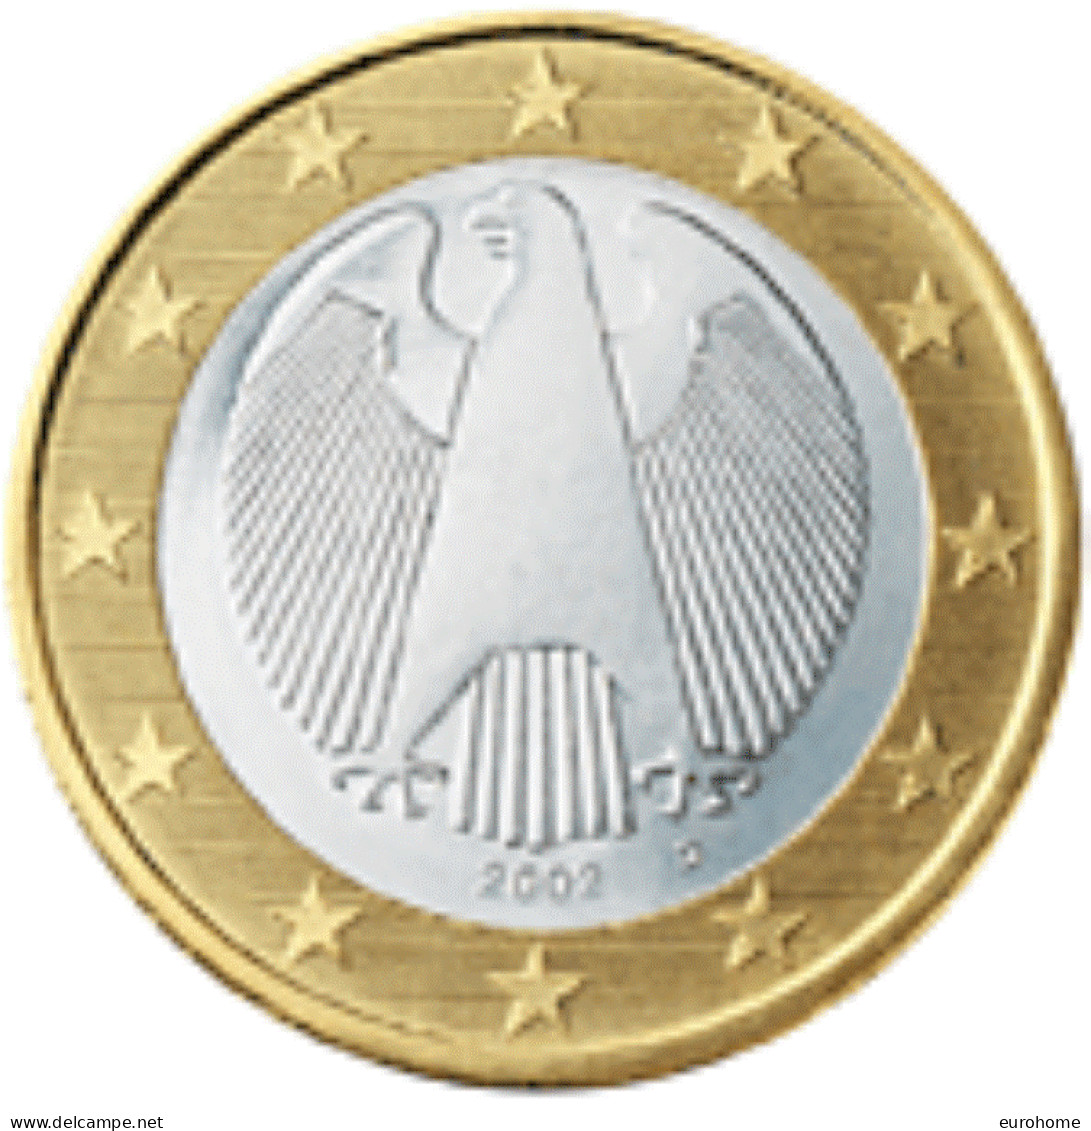 Duitsland 2022   1 Euro   Letter G - Atelier G  UNC Uit De BU - Unc Du Coffret !!! - Allemagne